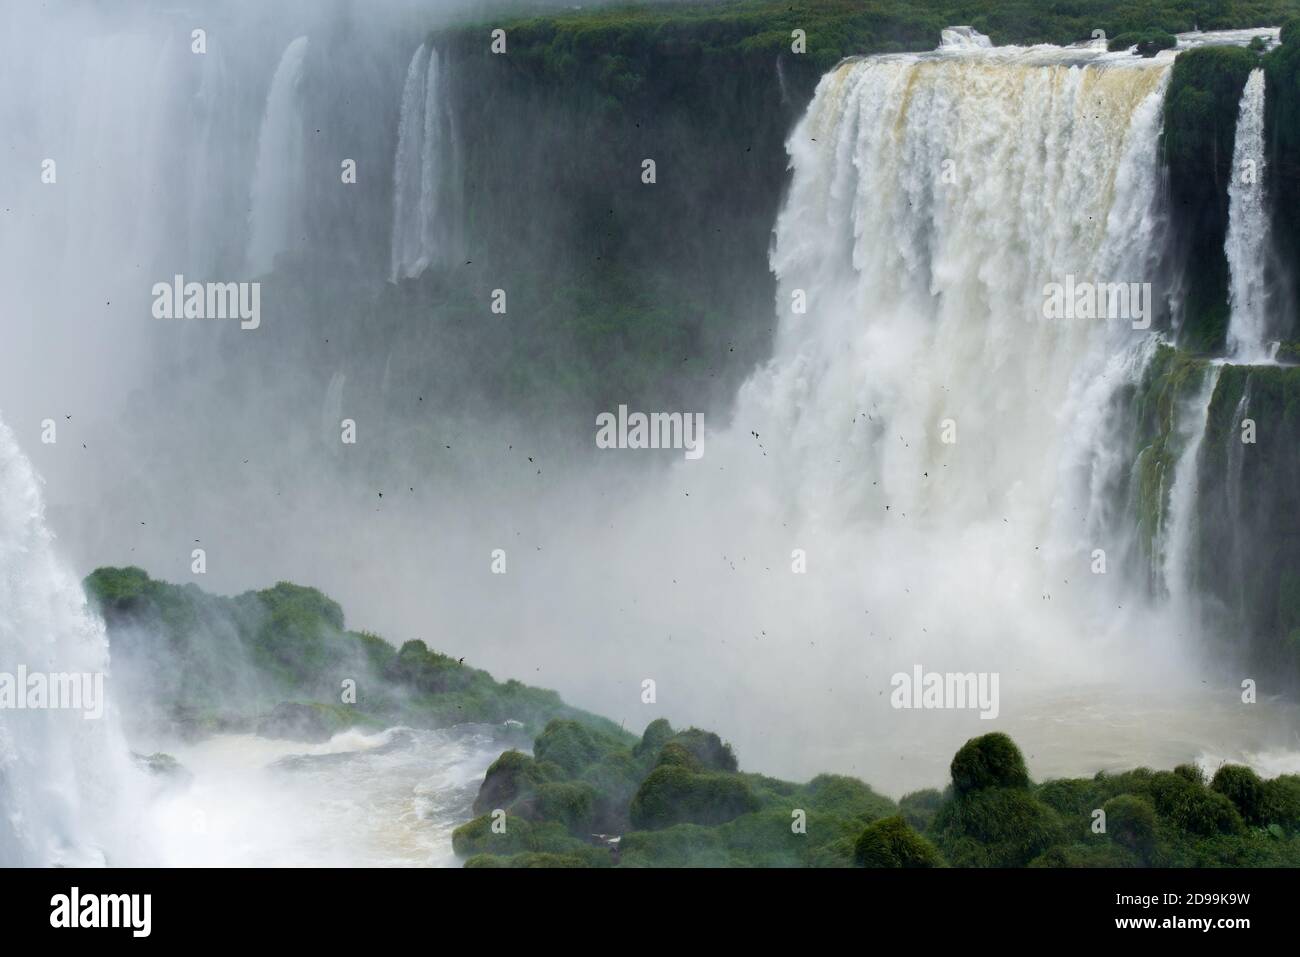 Chutes d'Iguazu, l'une des sept nouvelles merveilles de la nature, au Brésil et en Argentine Banque D'Images